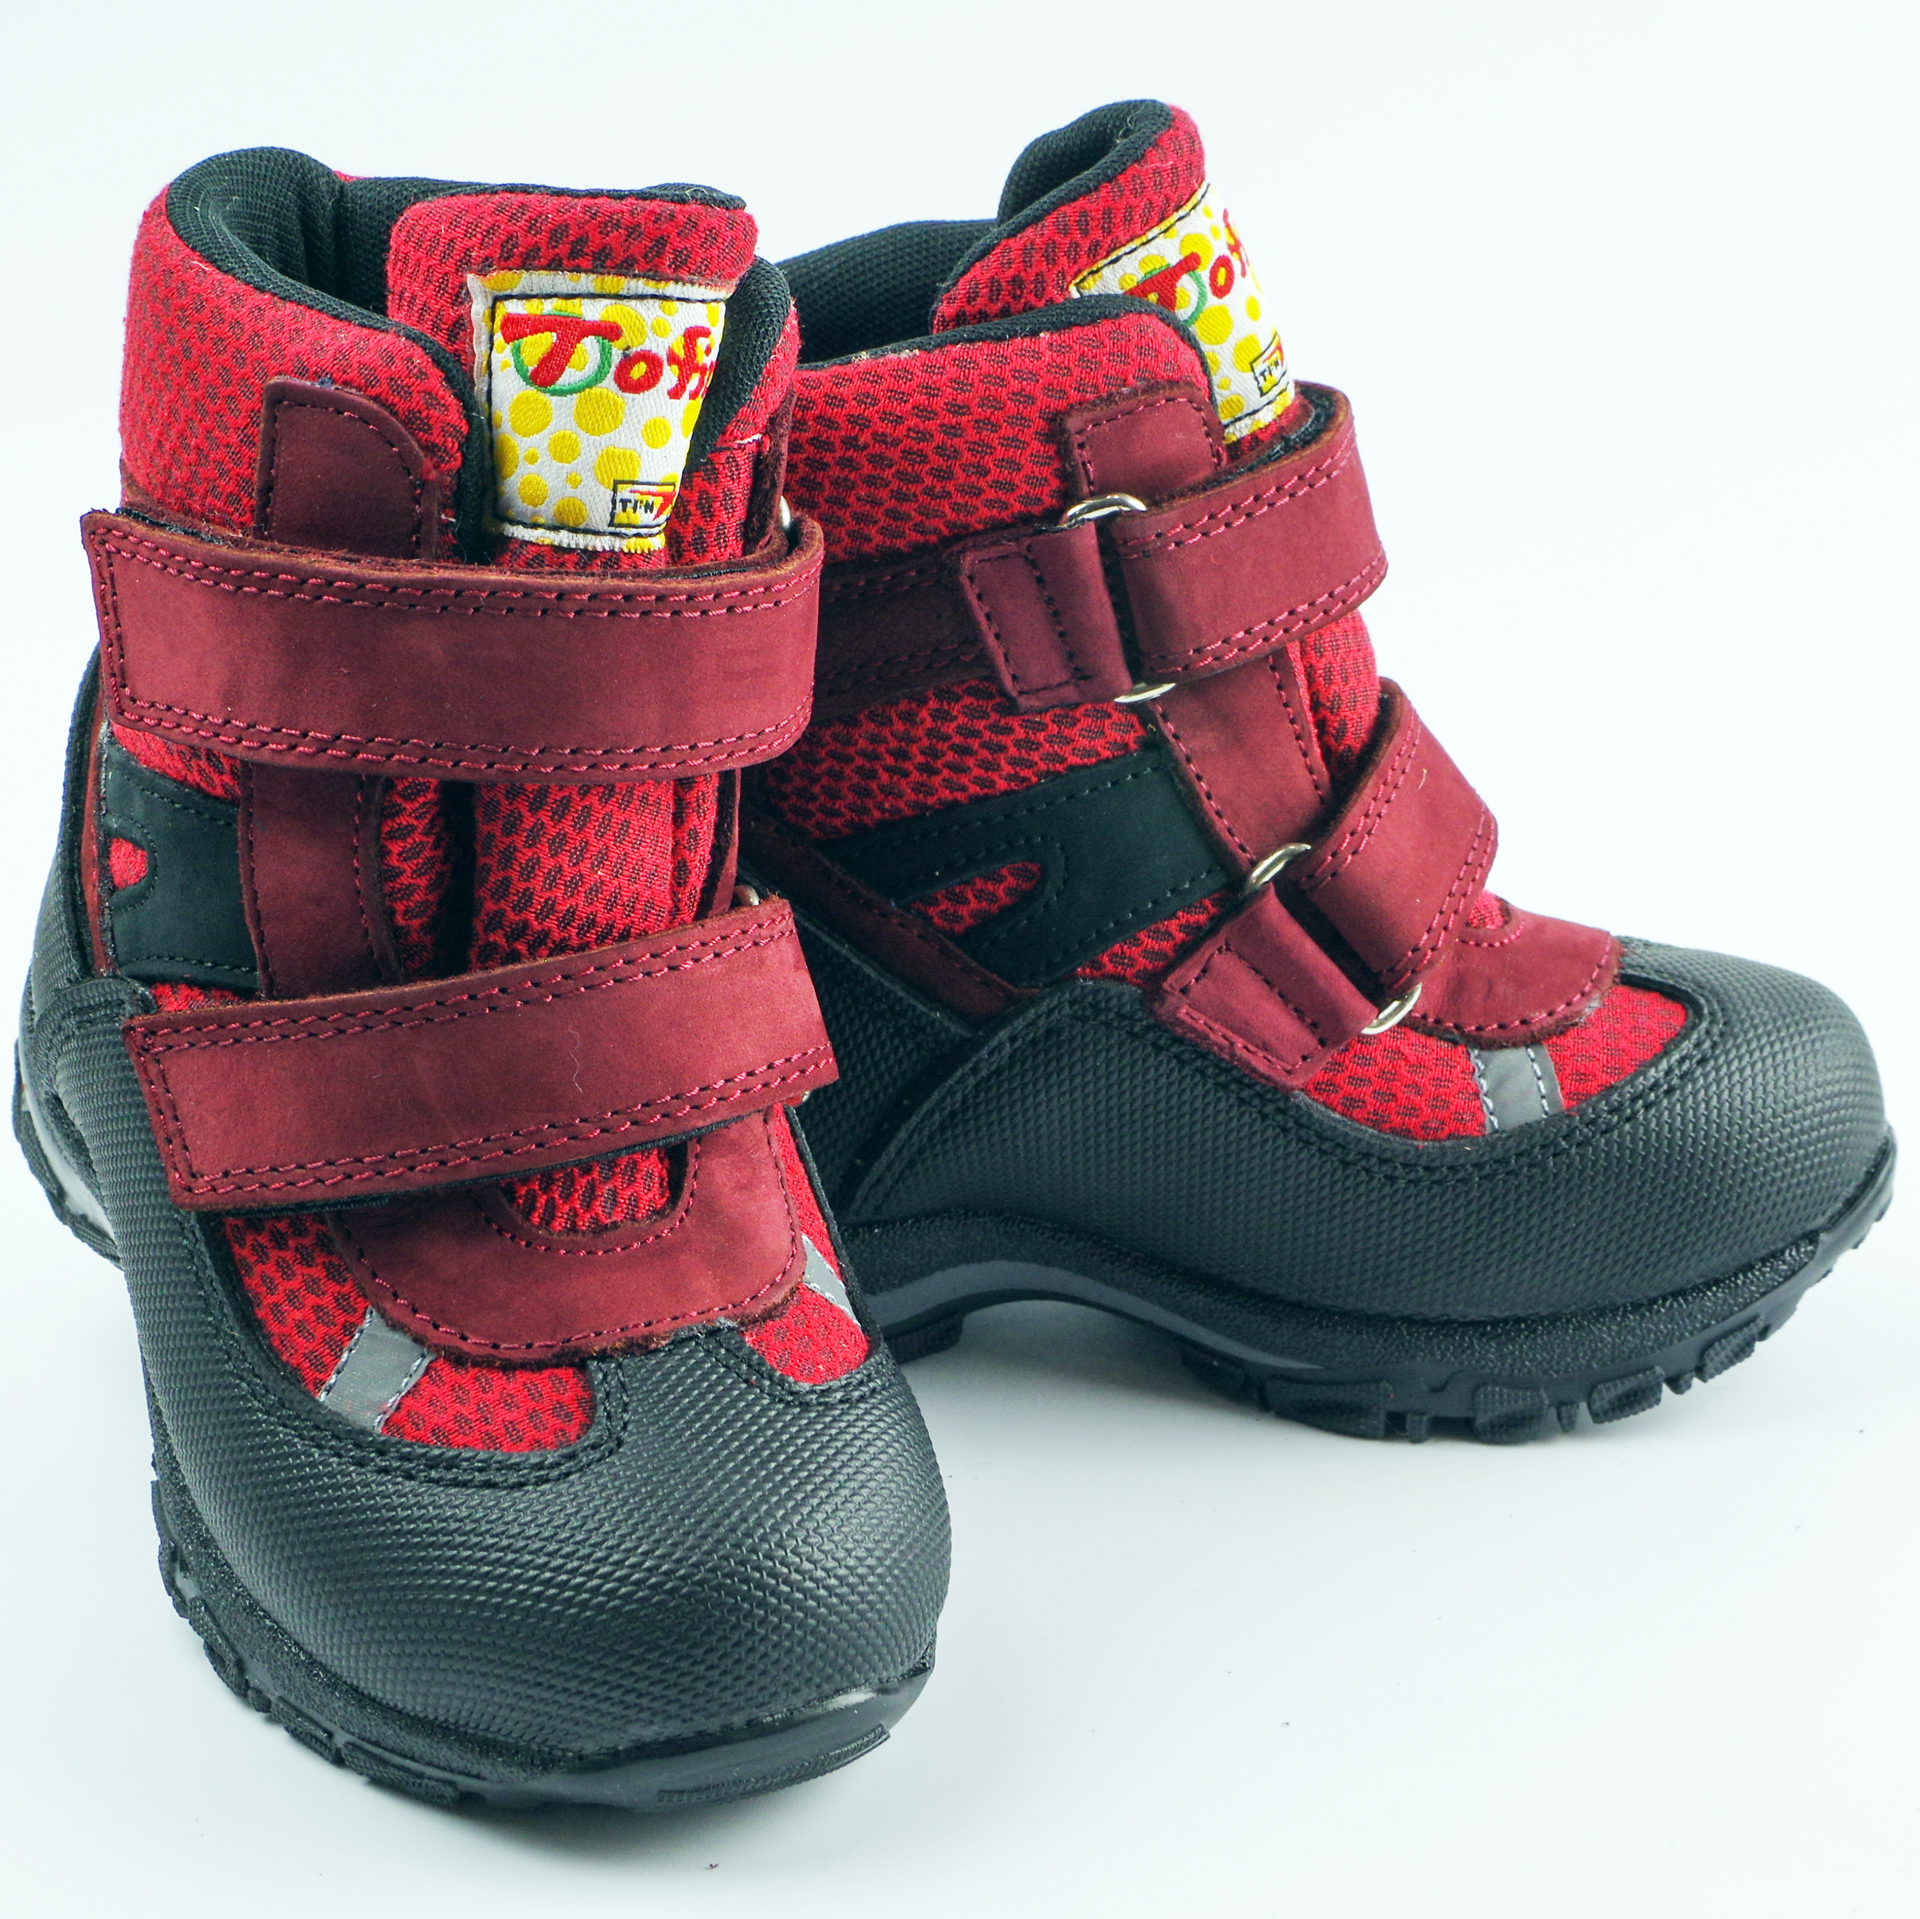 Мембранные зимние ботинки (2145) материал Мембрана, цвет Красный  для девочки 22-25 размеры – Sole Kids, Днепр. Фото 2